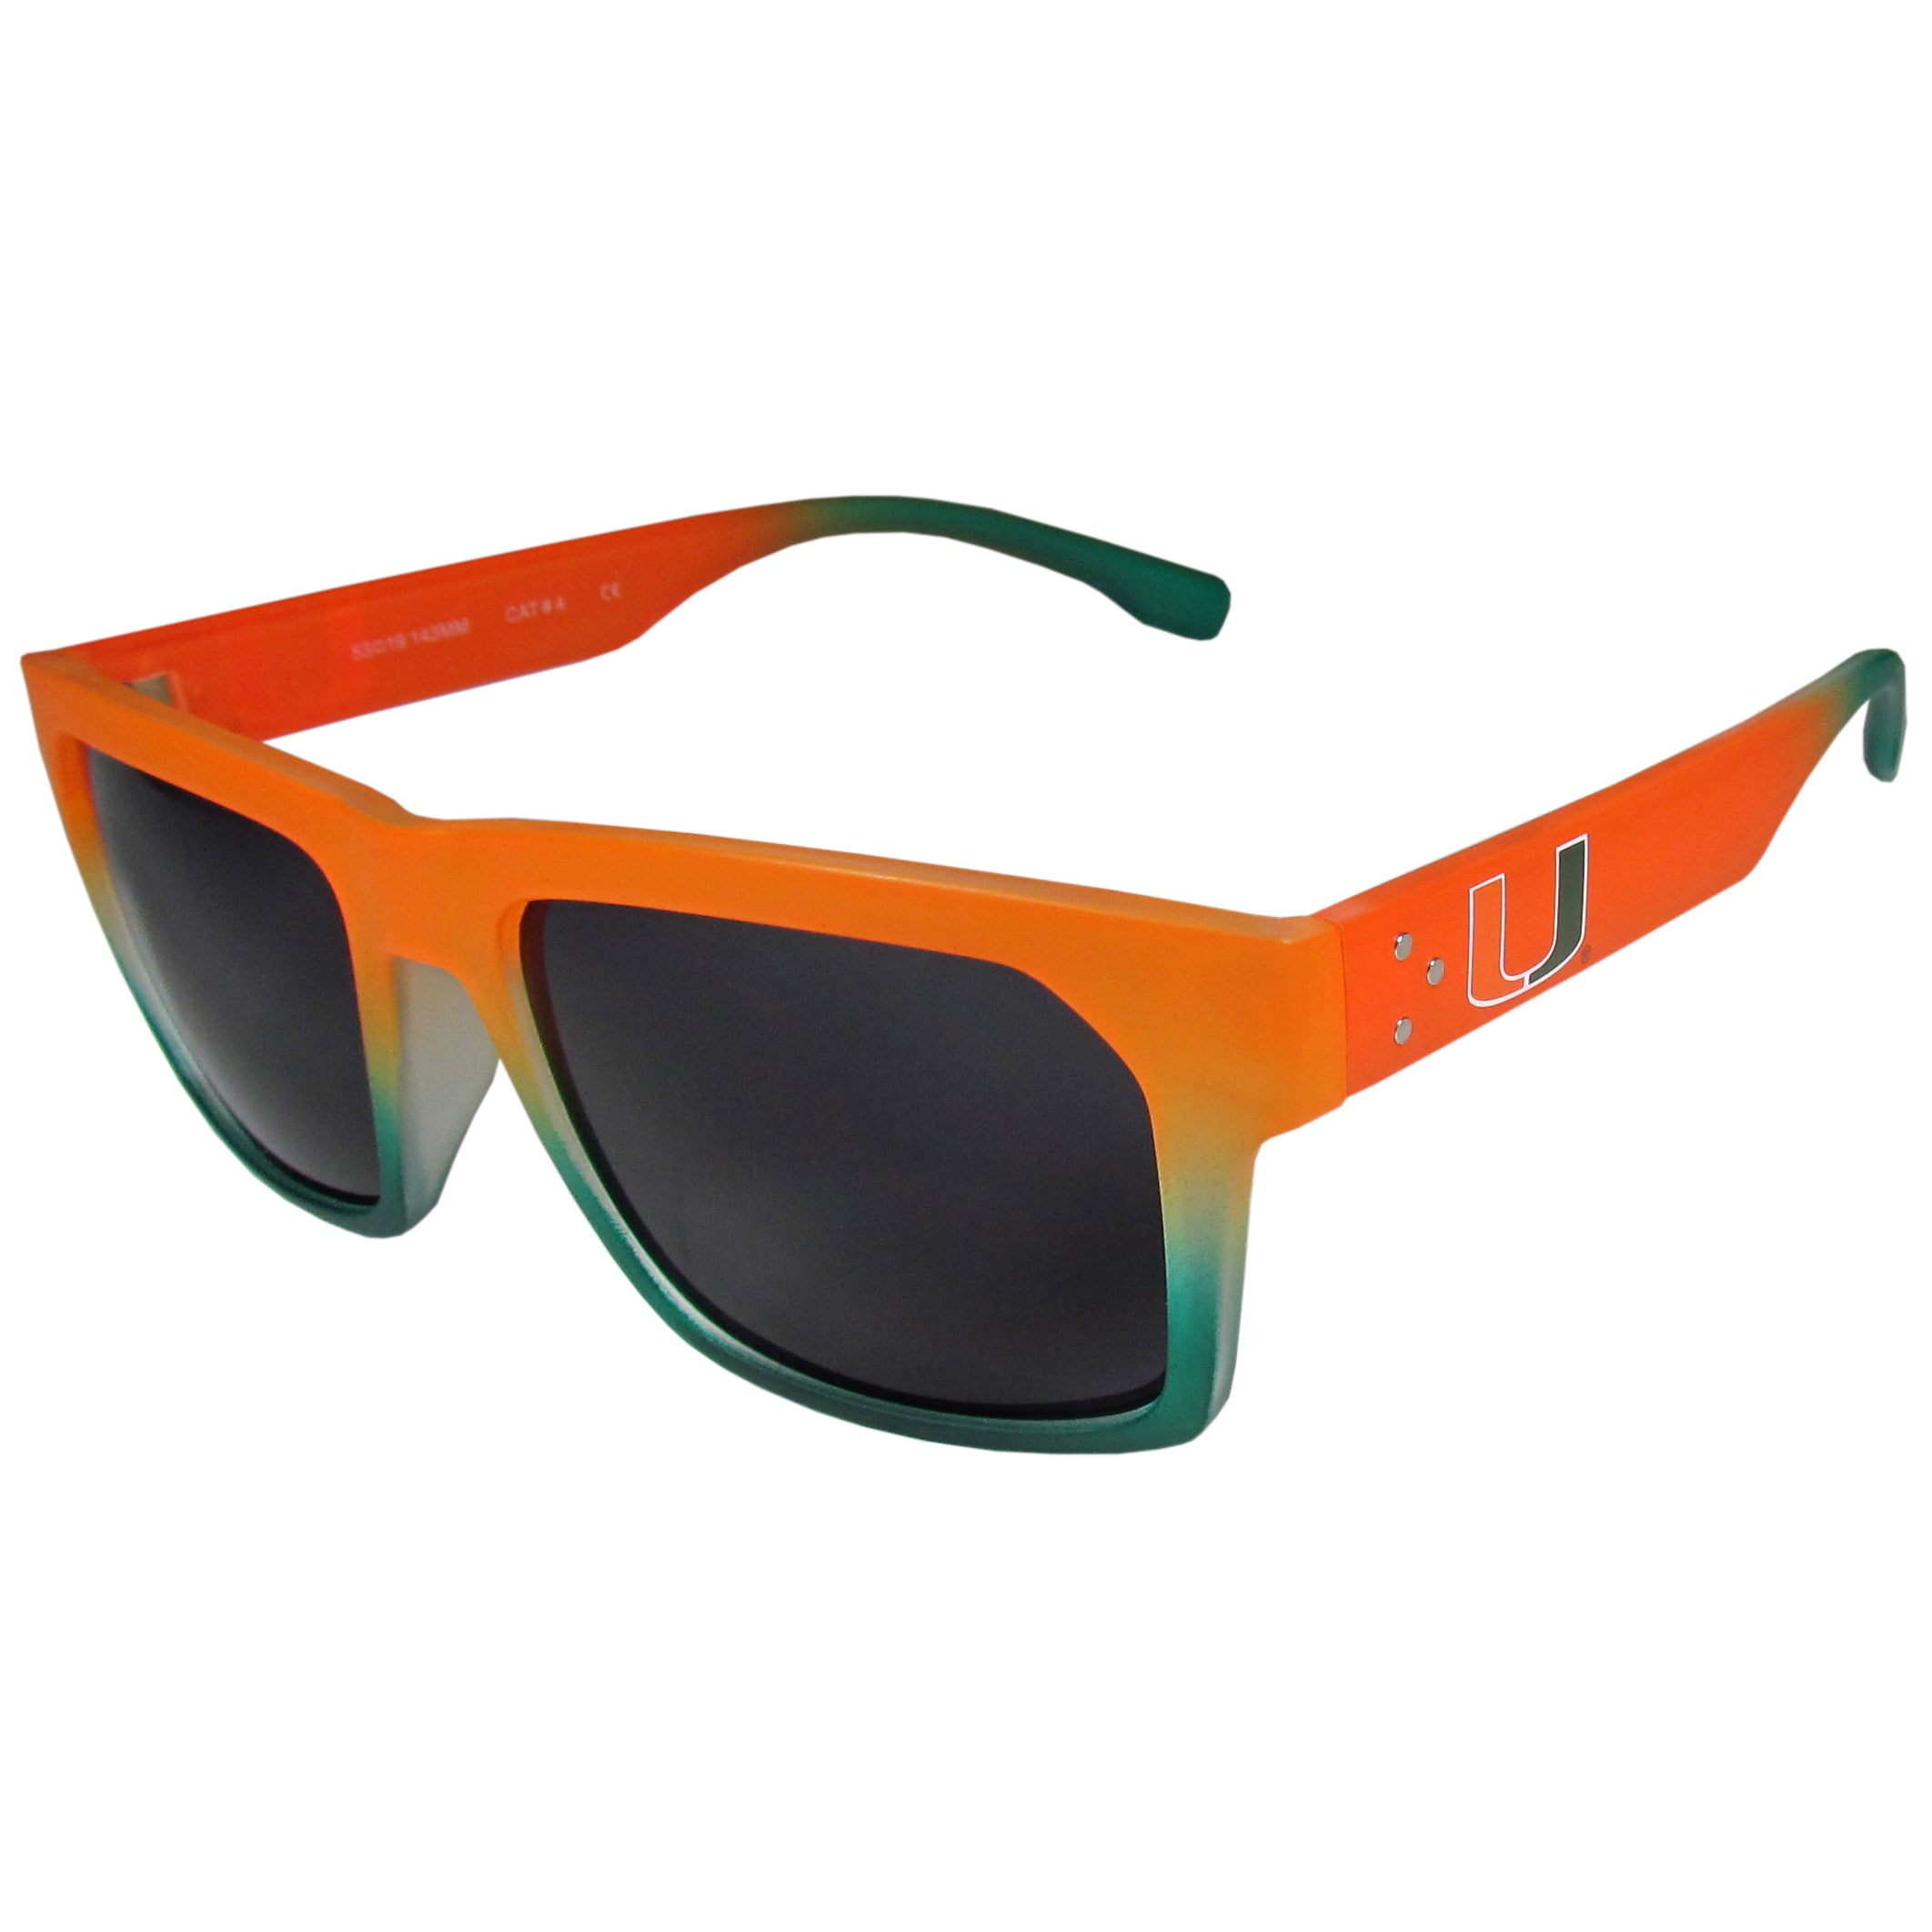 Miami Hurricanes Fadeout Sunglasses - Green/Orange